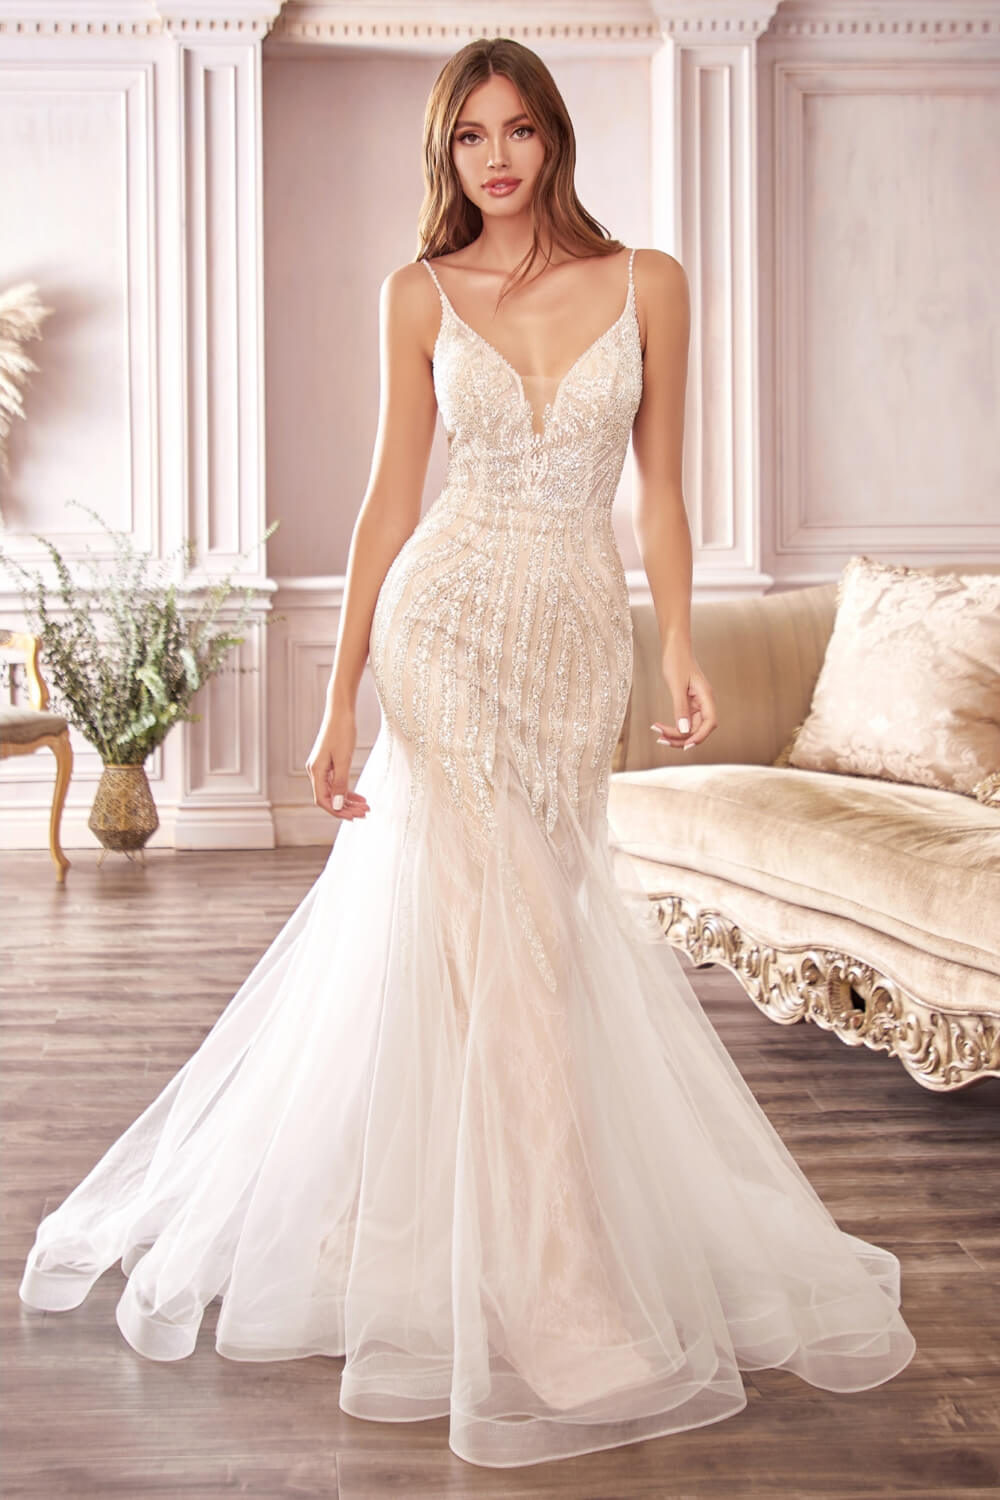 Nosotras estamos obsesionadas con encontrar el vestido de novia ideal para ti, sublime, perfecto. Hemos pasado por este momento tan mágico y hermoso. Pide tu cita